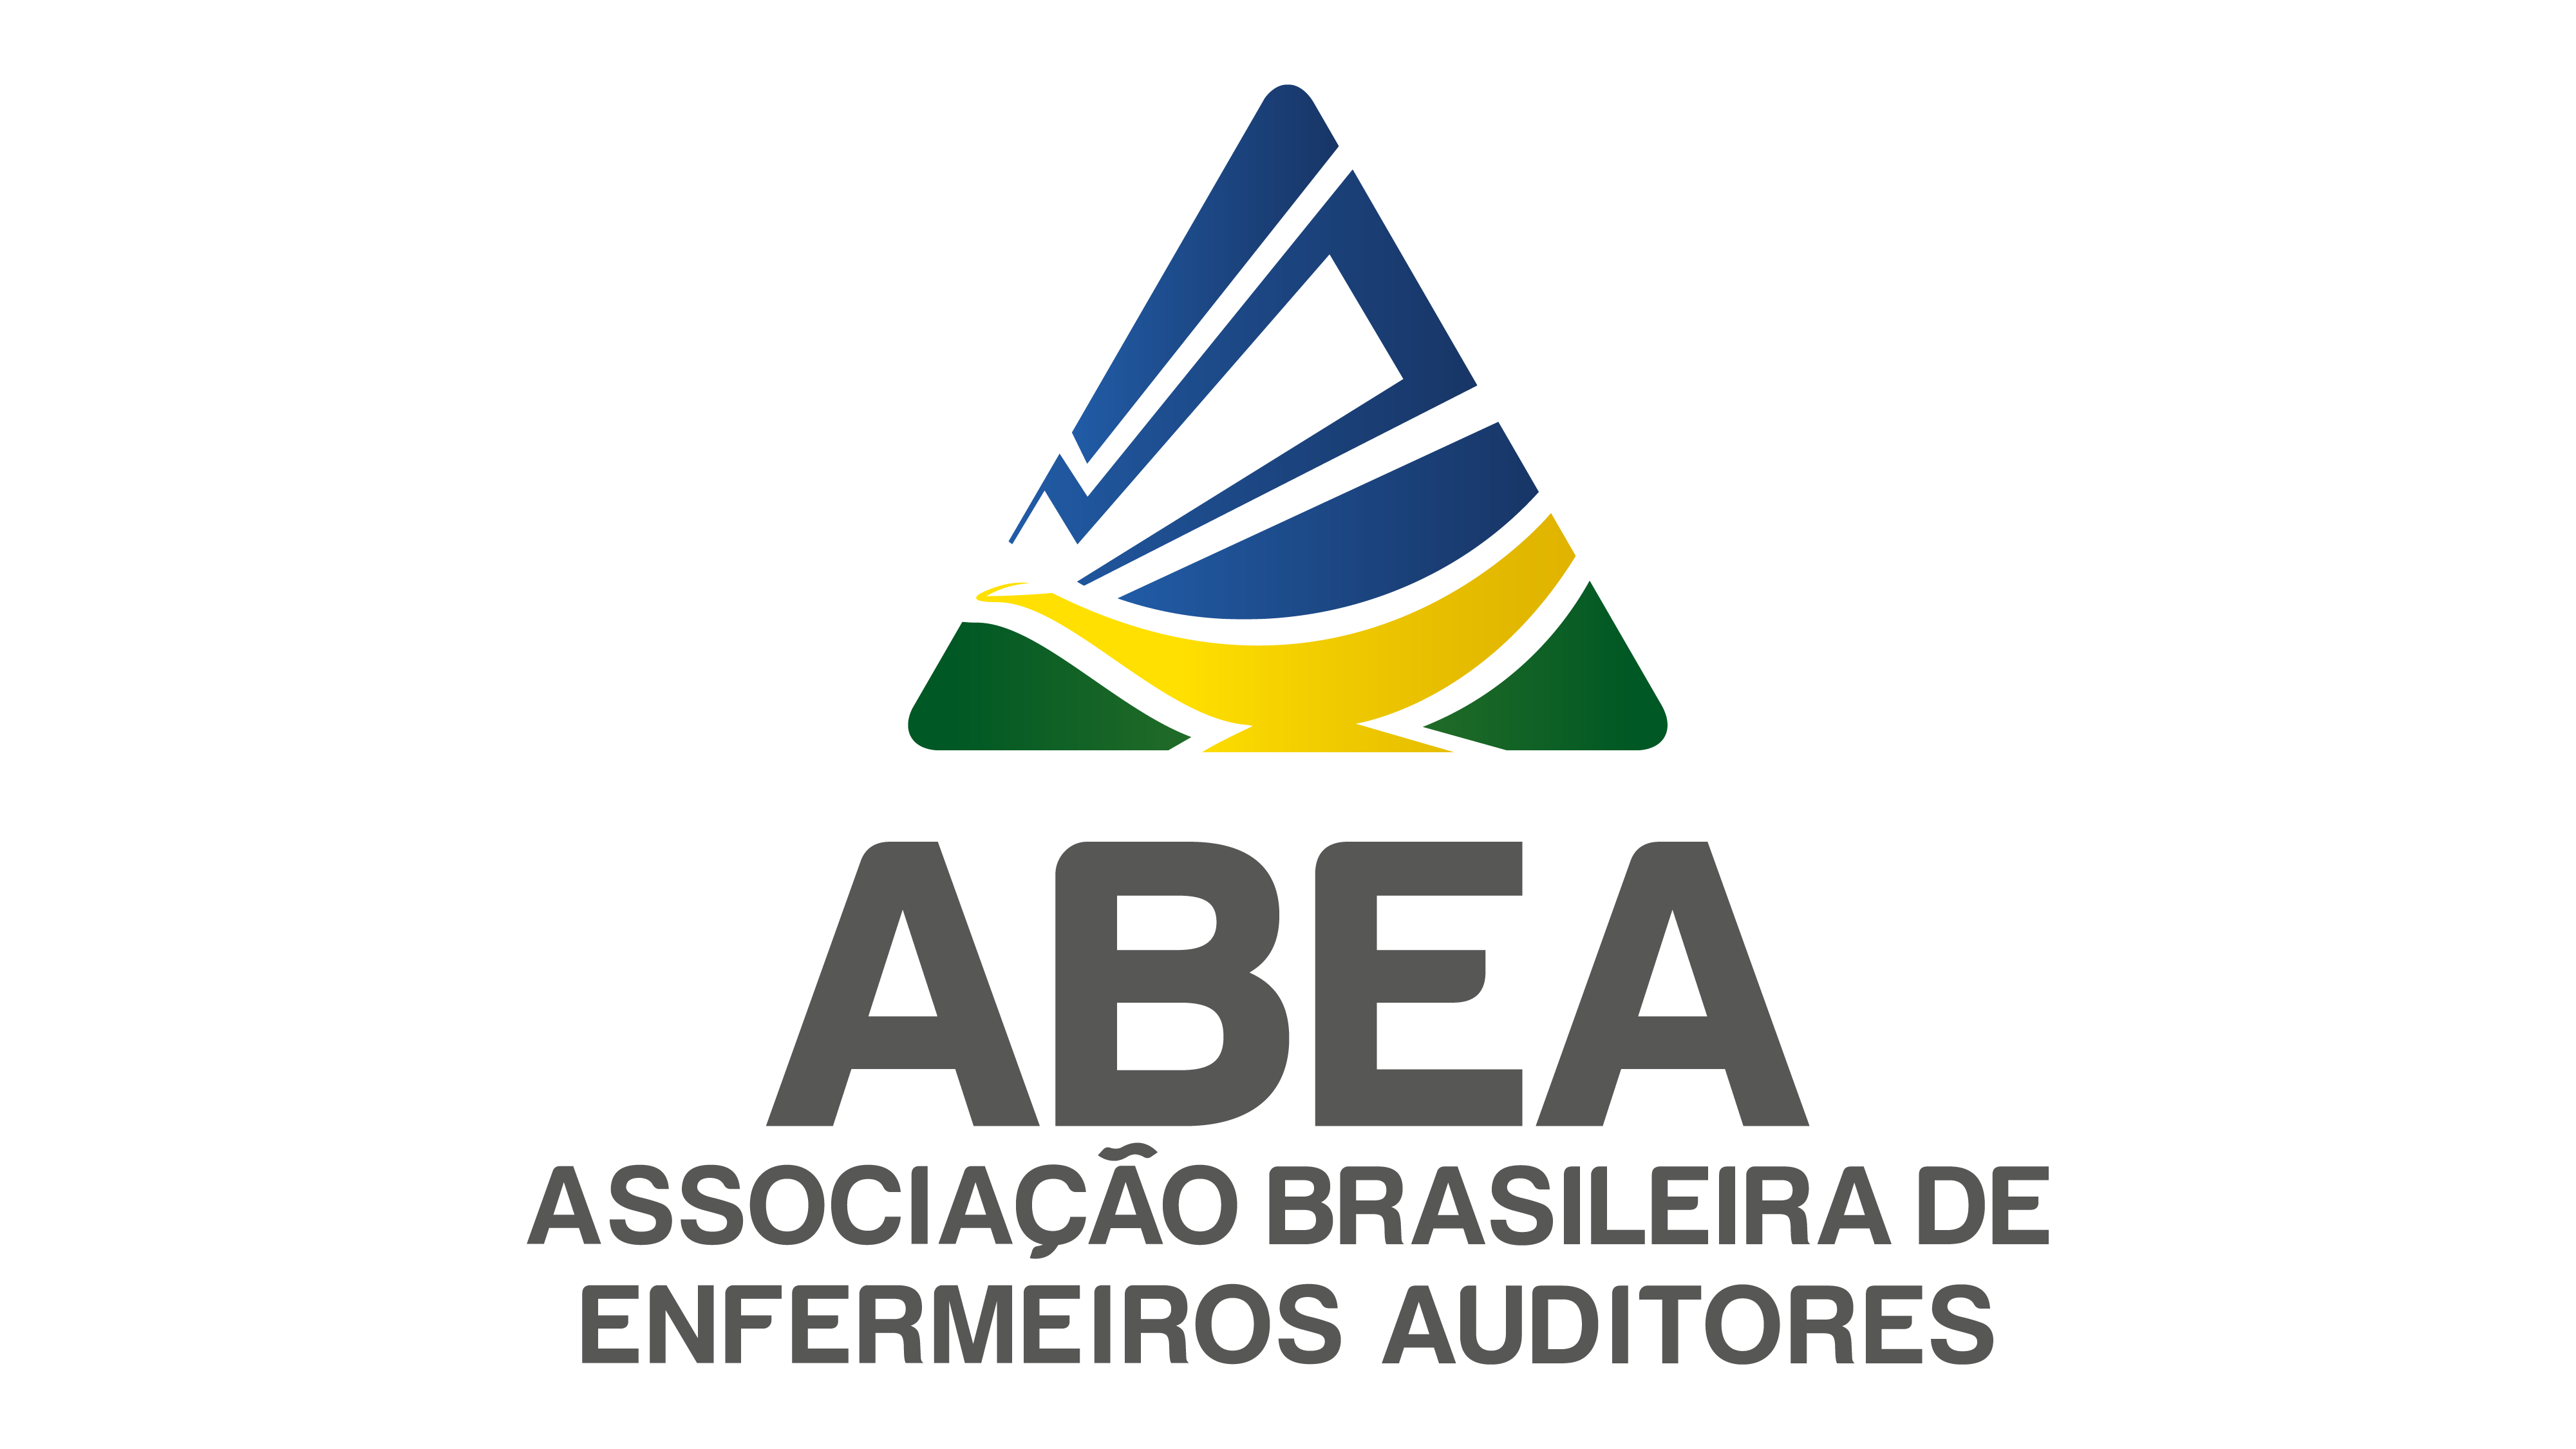 ABEA - Associação Brasileira de Enfermeiros Auditores